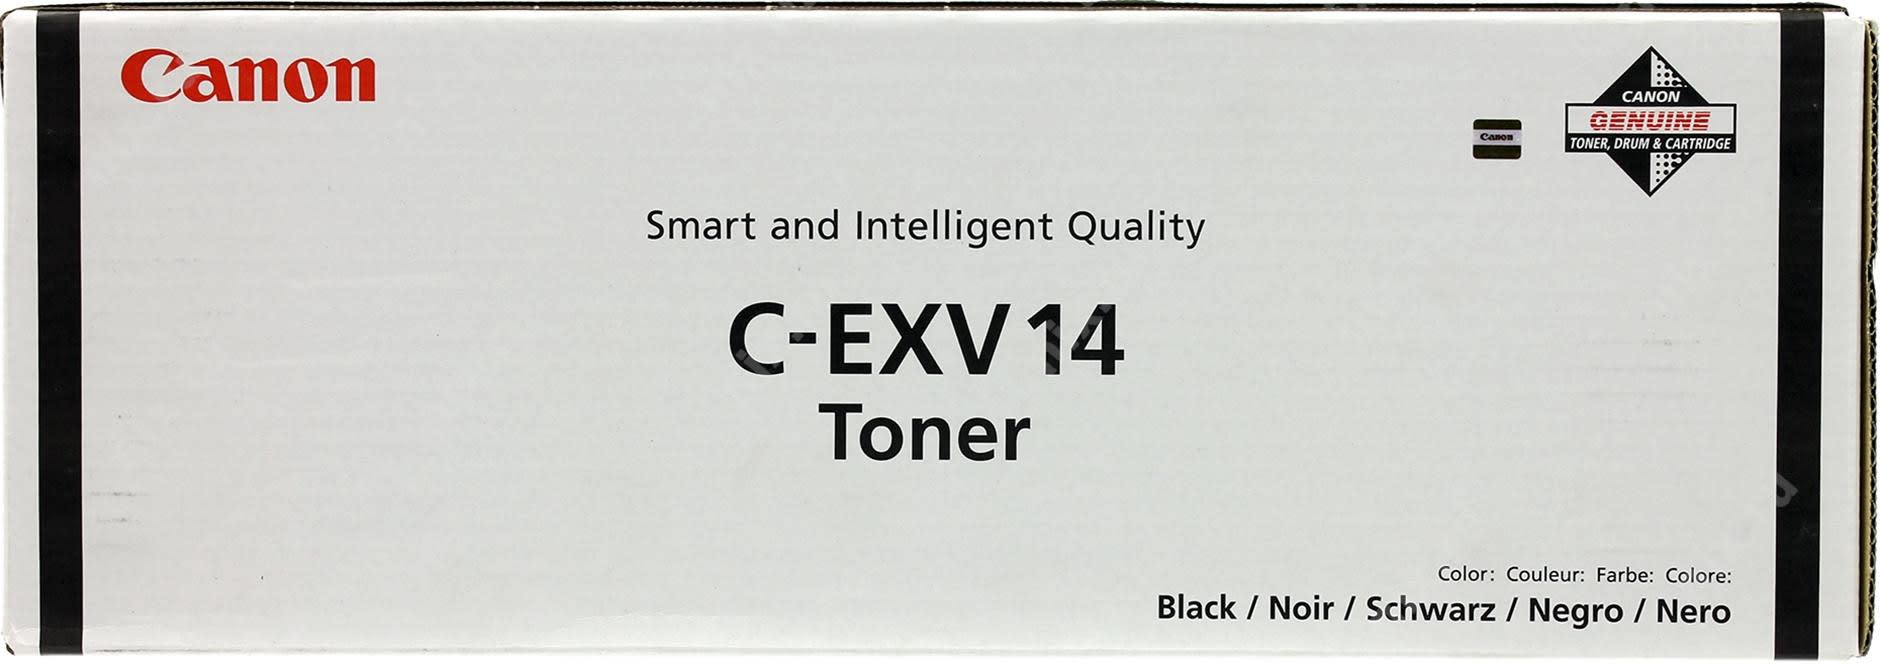 Тубы Canon C-EXV14 для Canon iR-2016 Купить комплект картриджей.